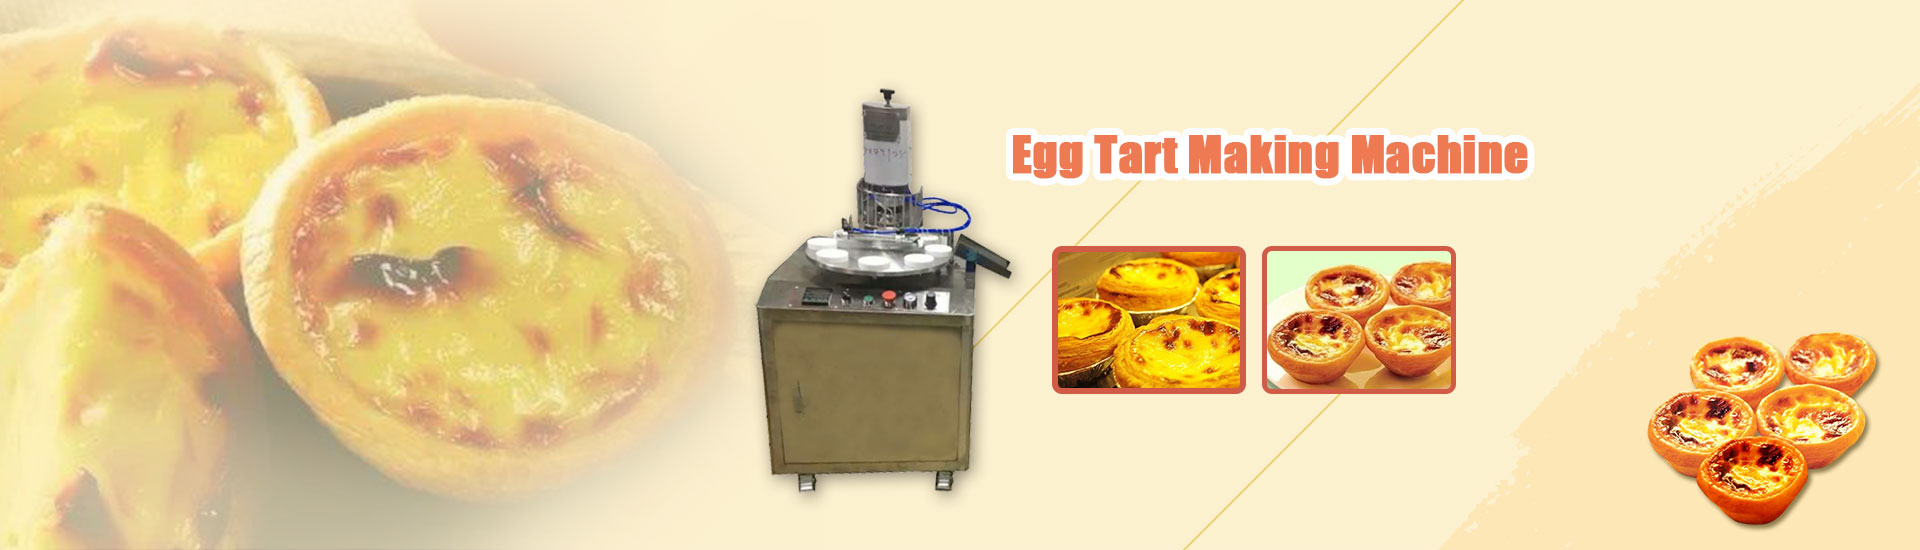 Egg Tart Making Machine